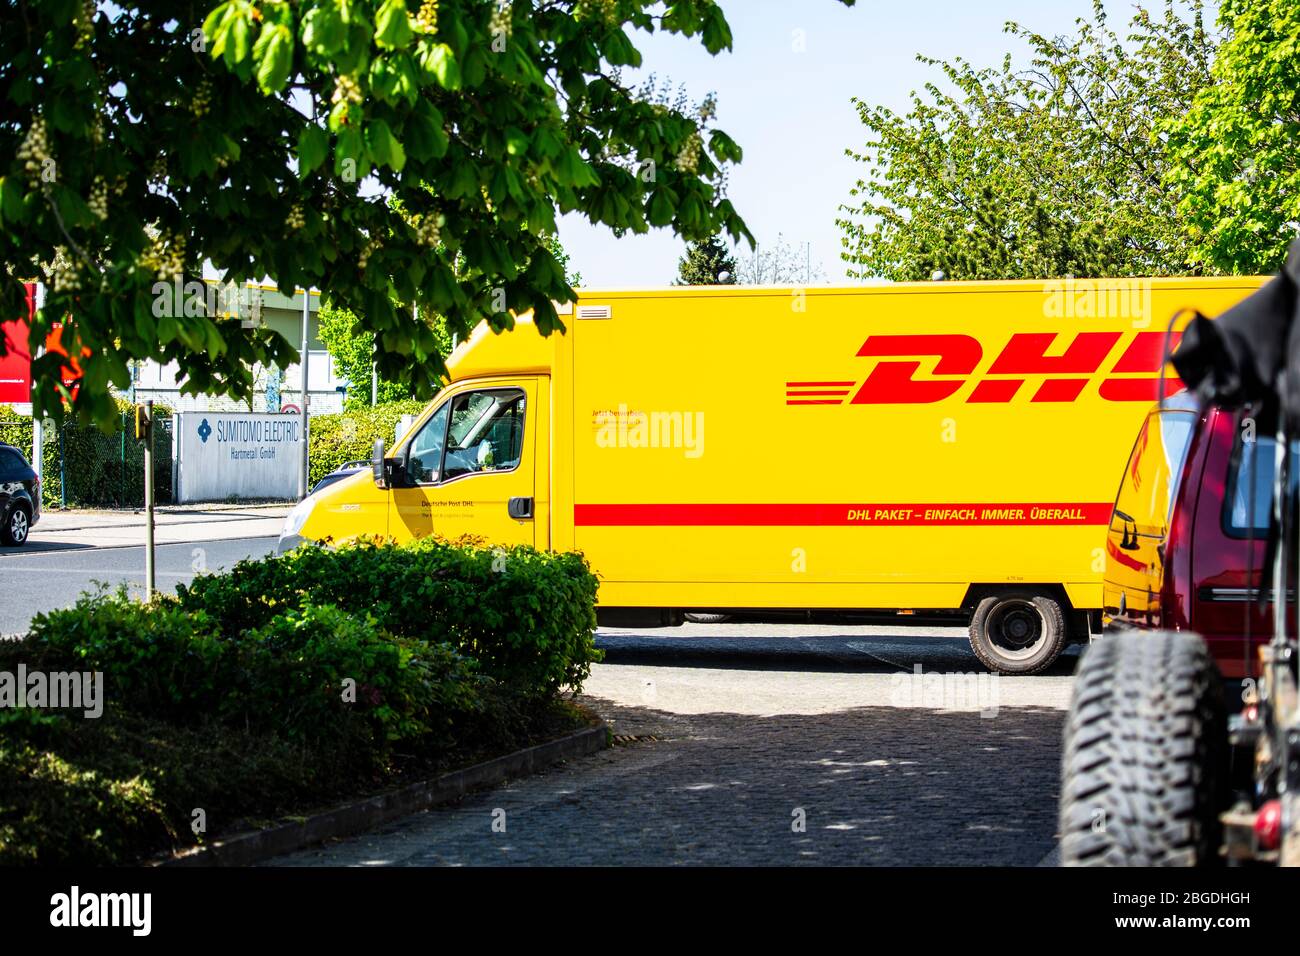 Ein Fahrzeug des Paketdienstleisters DHL liefert im Willicher Industriegebiet Pakete. Aktuell ist DHL wegen der Corona-Krise stellato belastet. Foto Stock